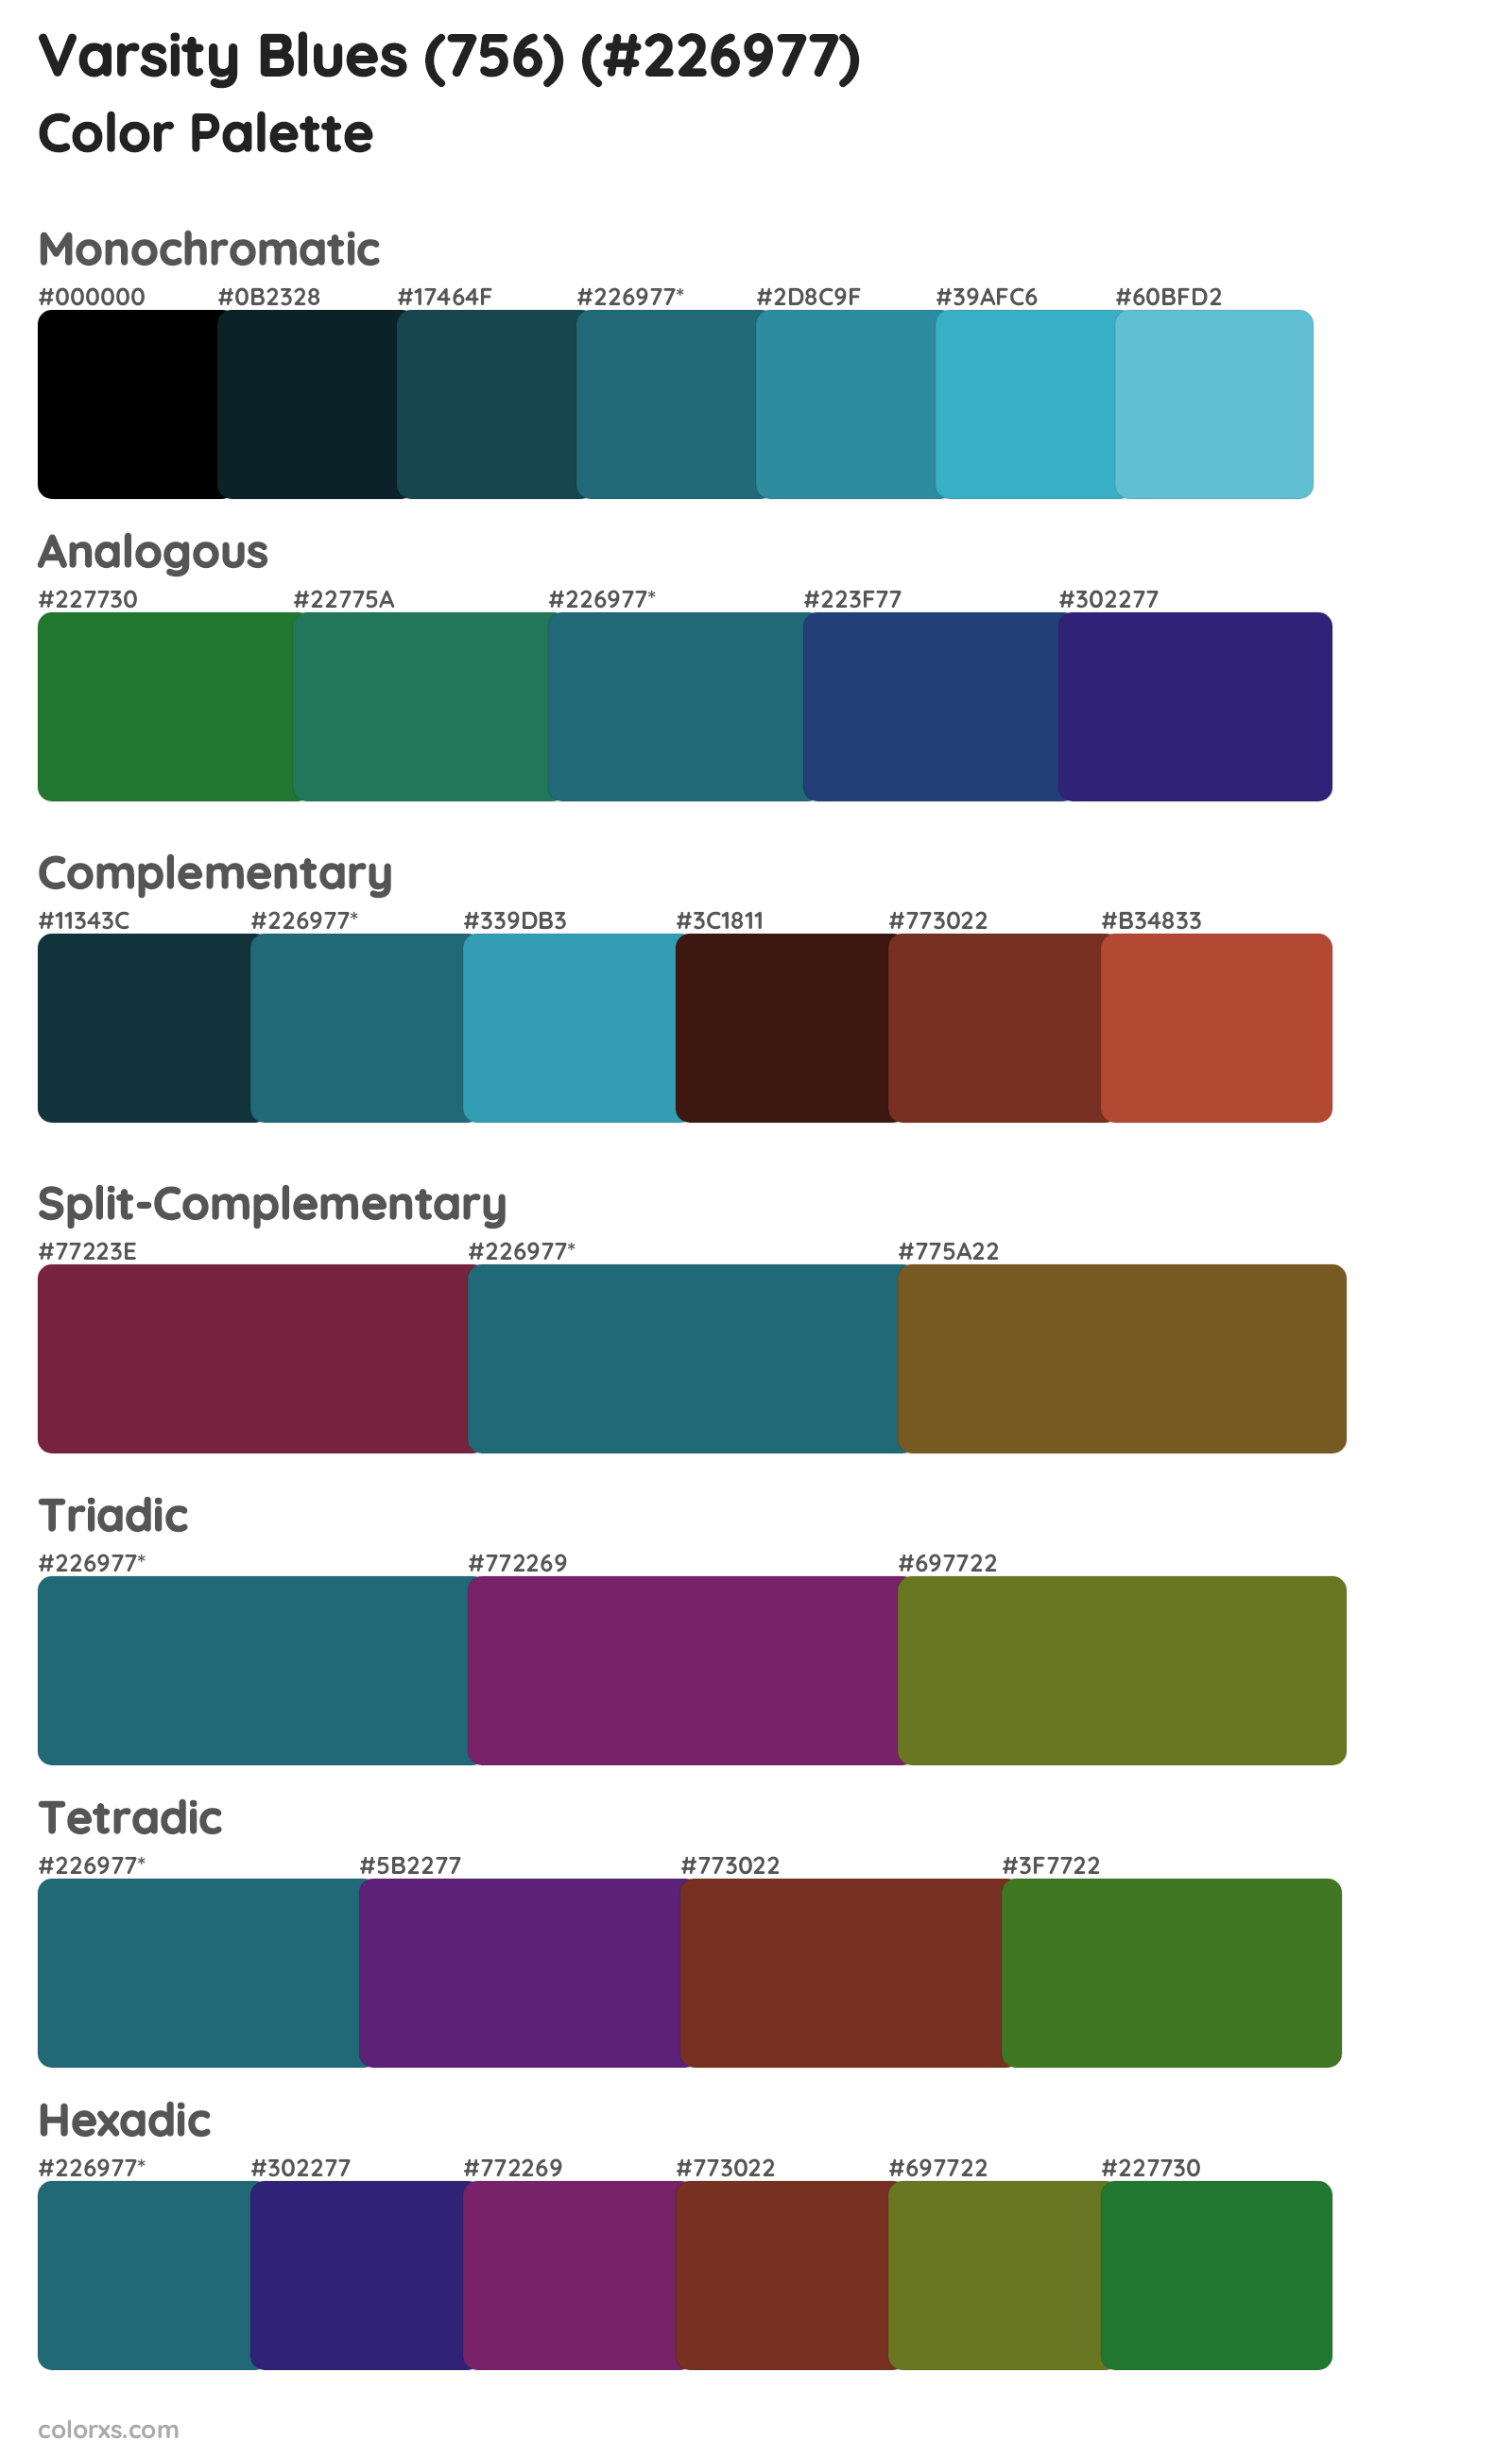 Varsity Blues (756) Color Scheme Palettes